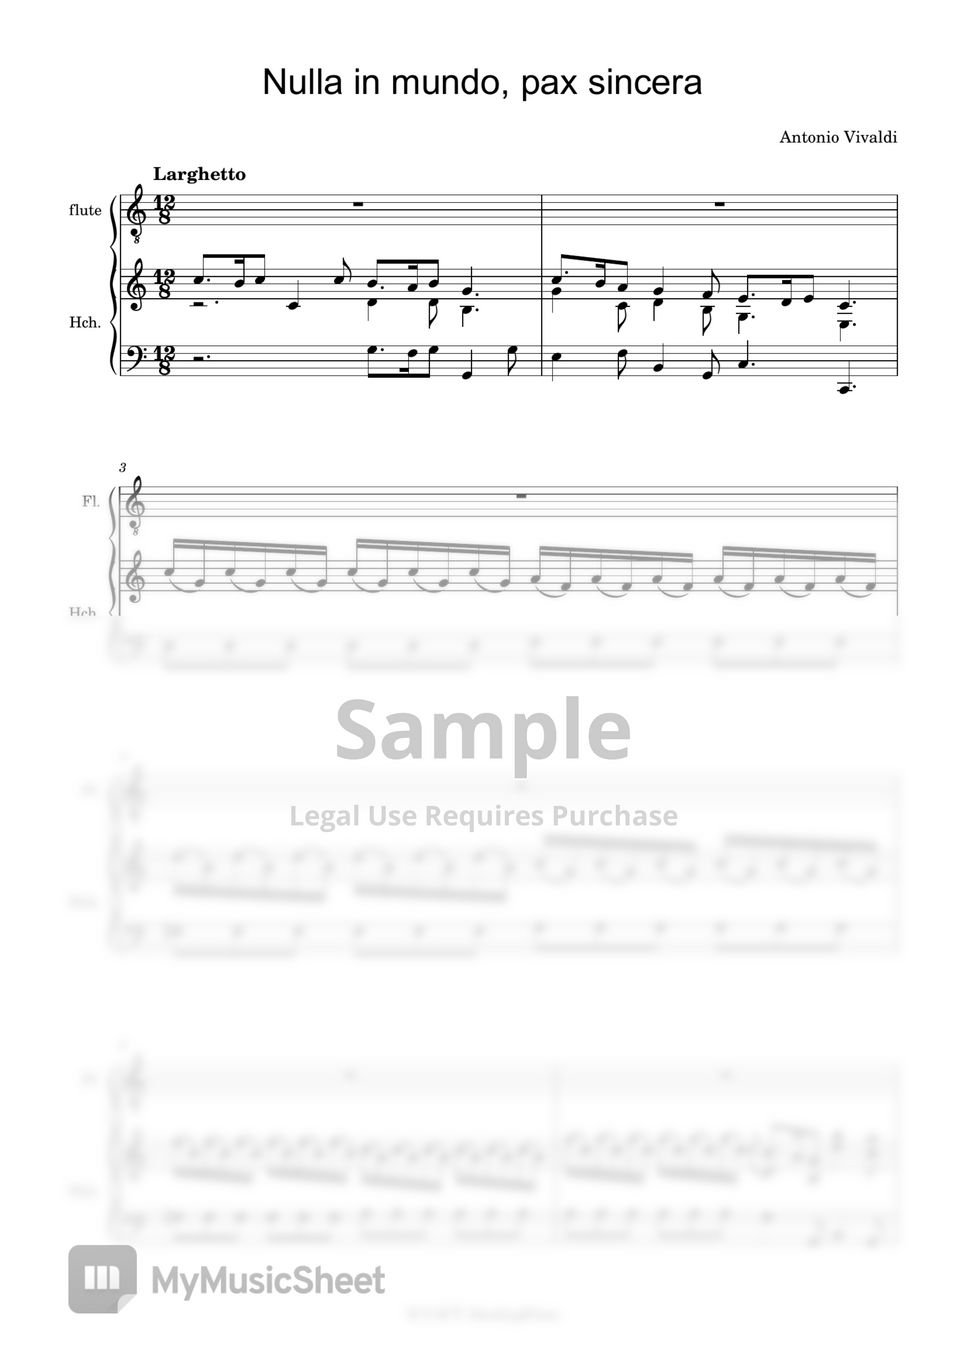 Antonio Vivaldi - Nulla in mundo, pax sincera (Flute & Hch.(or Piano)) by 힐링플룻 HealingFlute